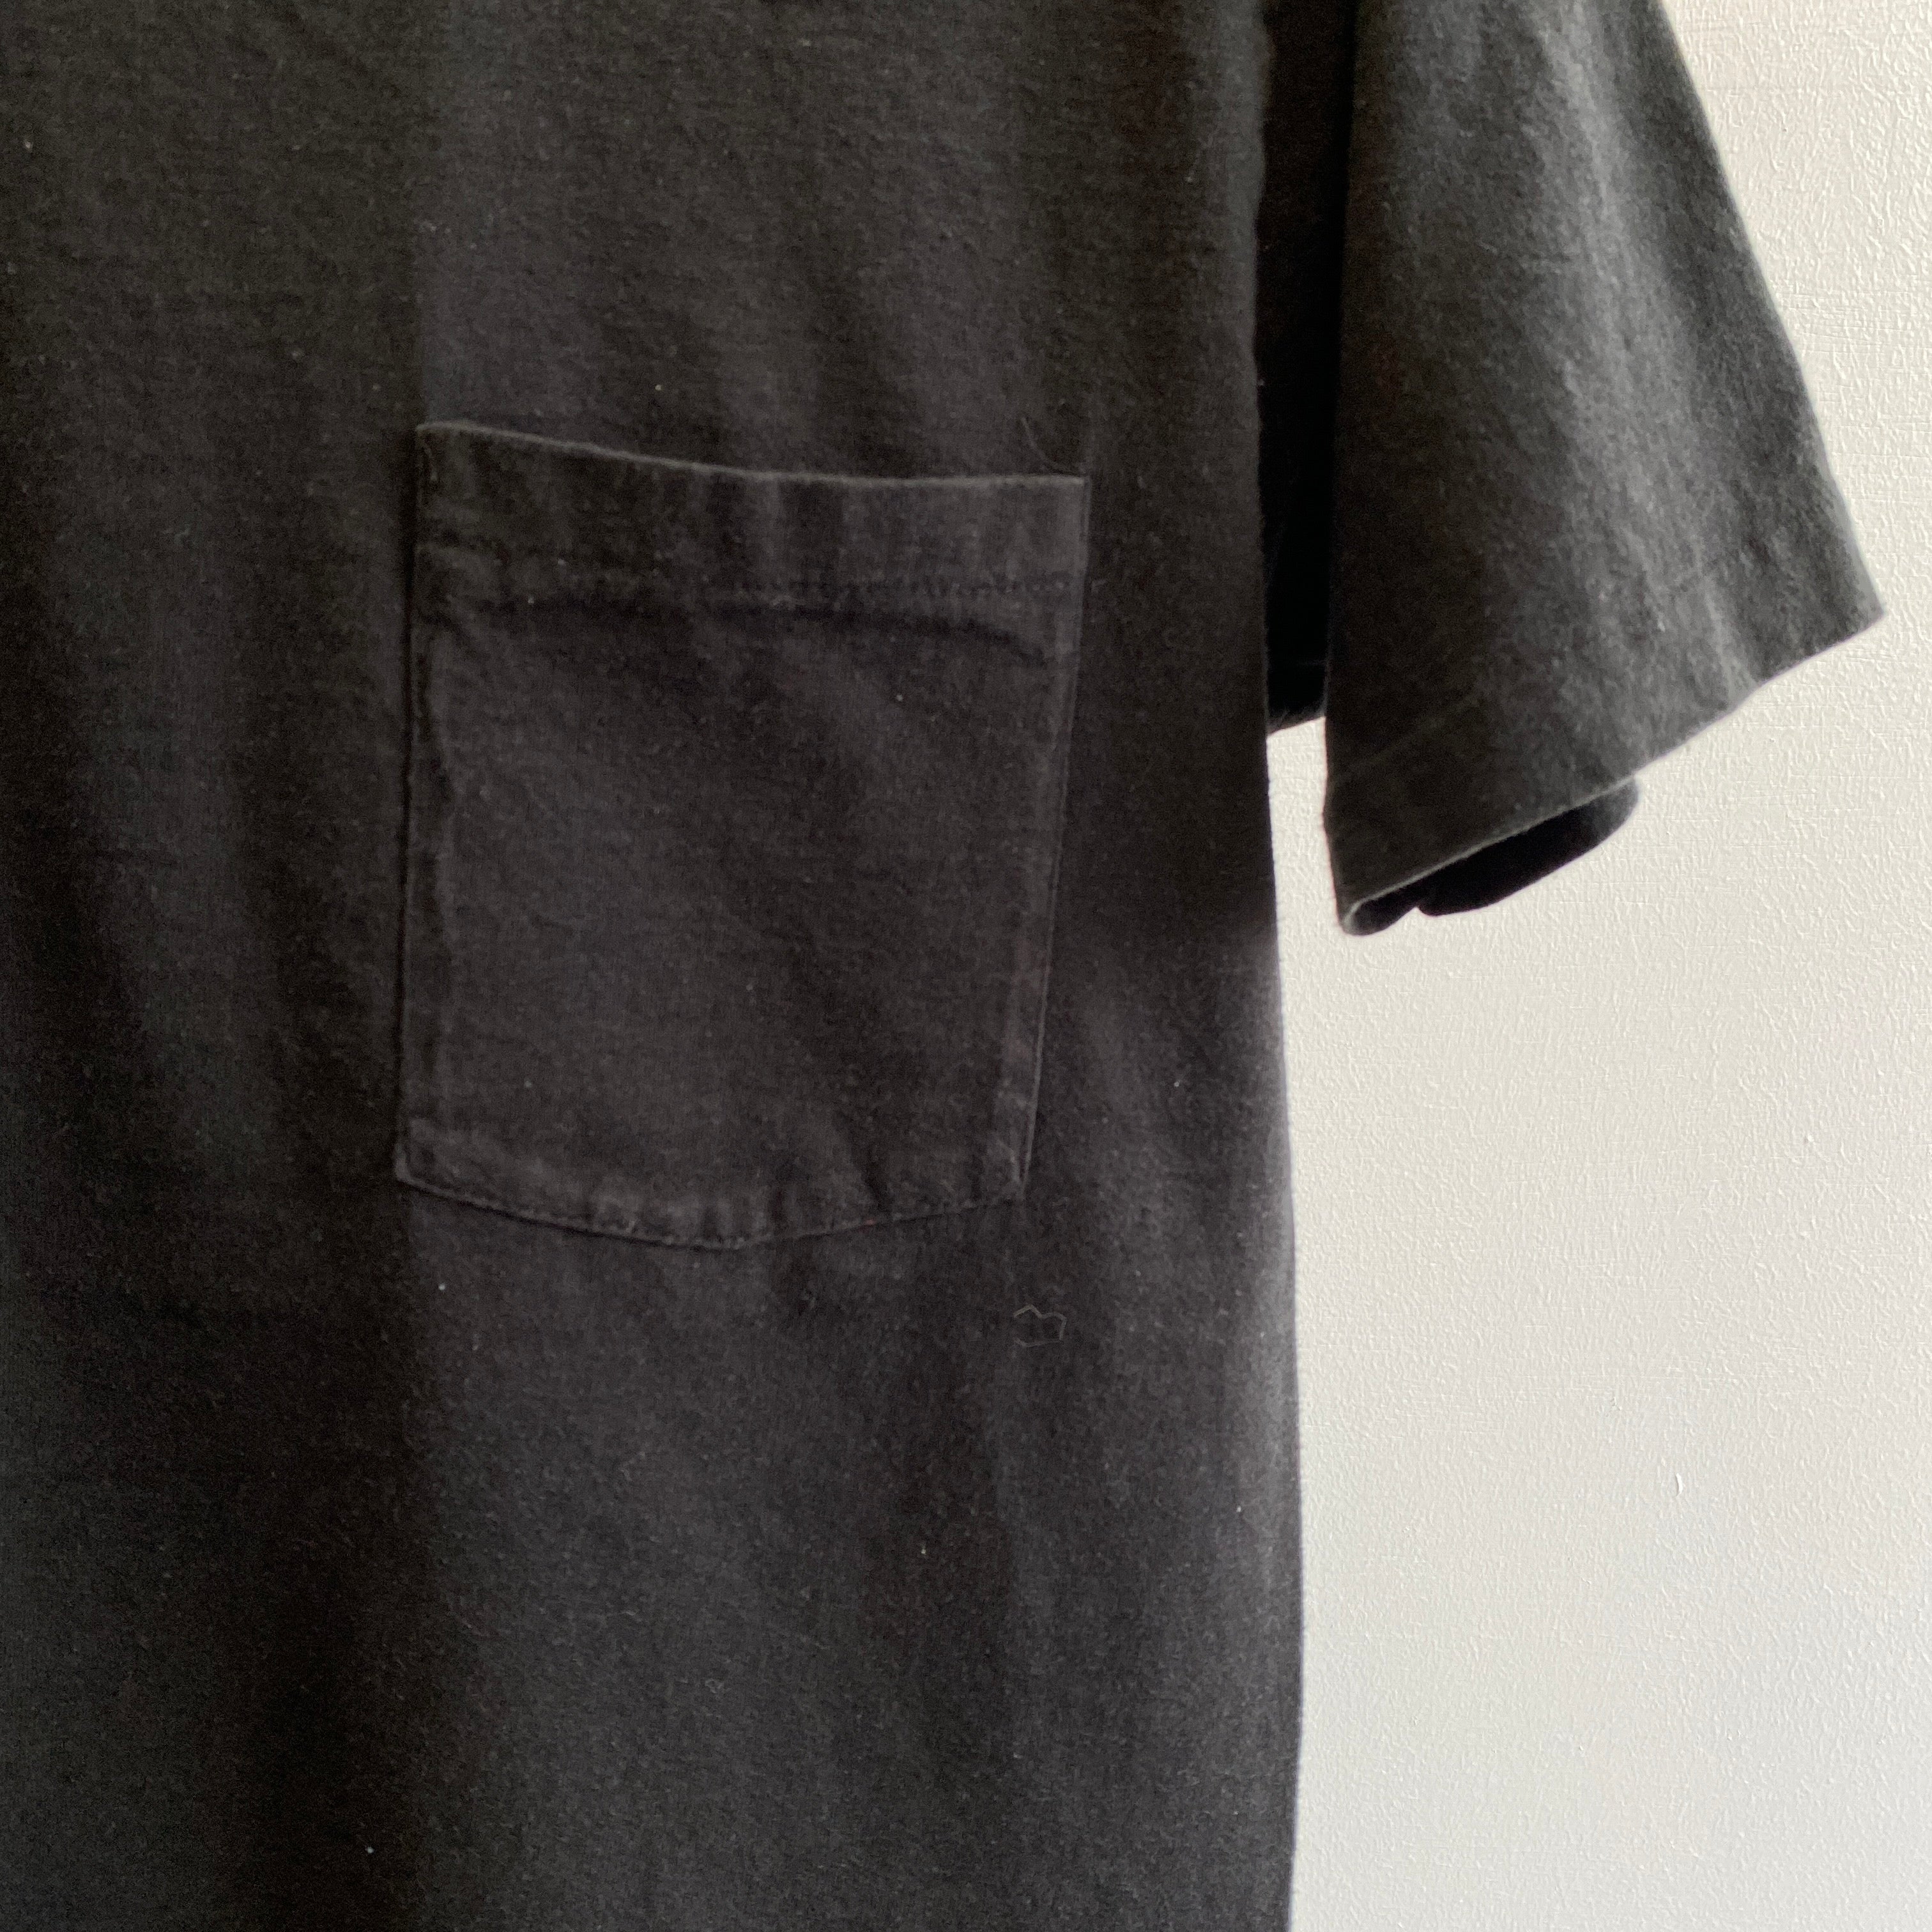 T-shirt de poche noir vierge BVD des années 1980/90